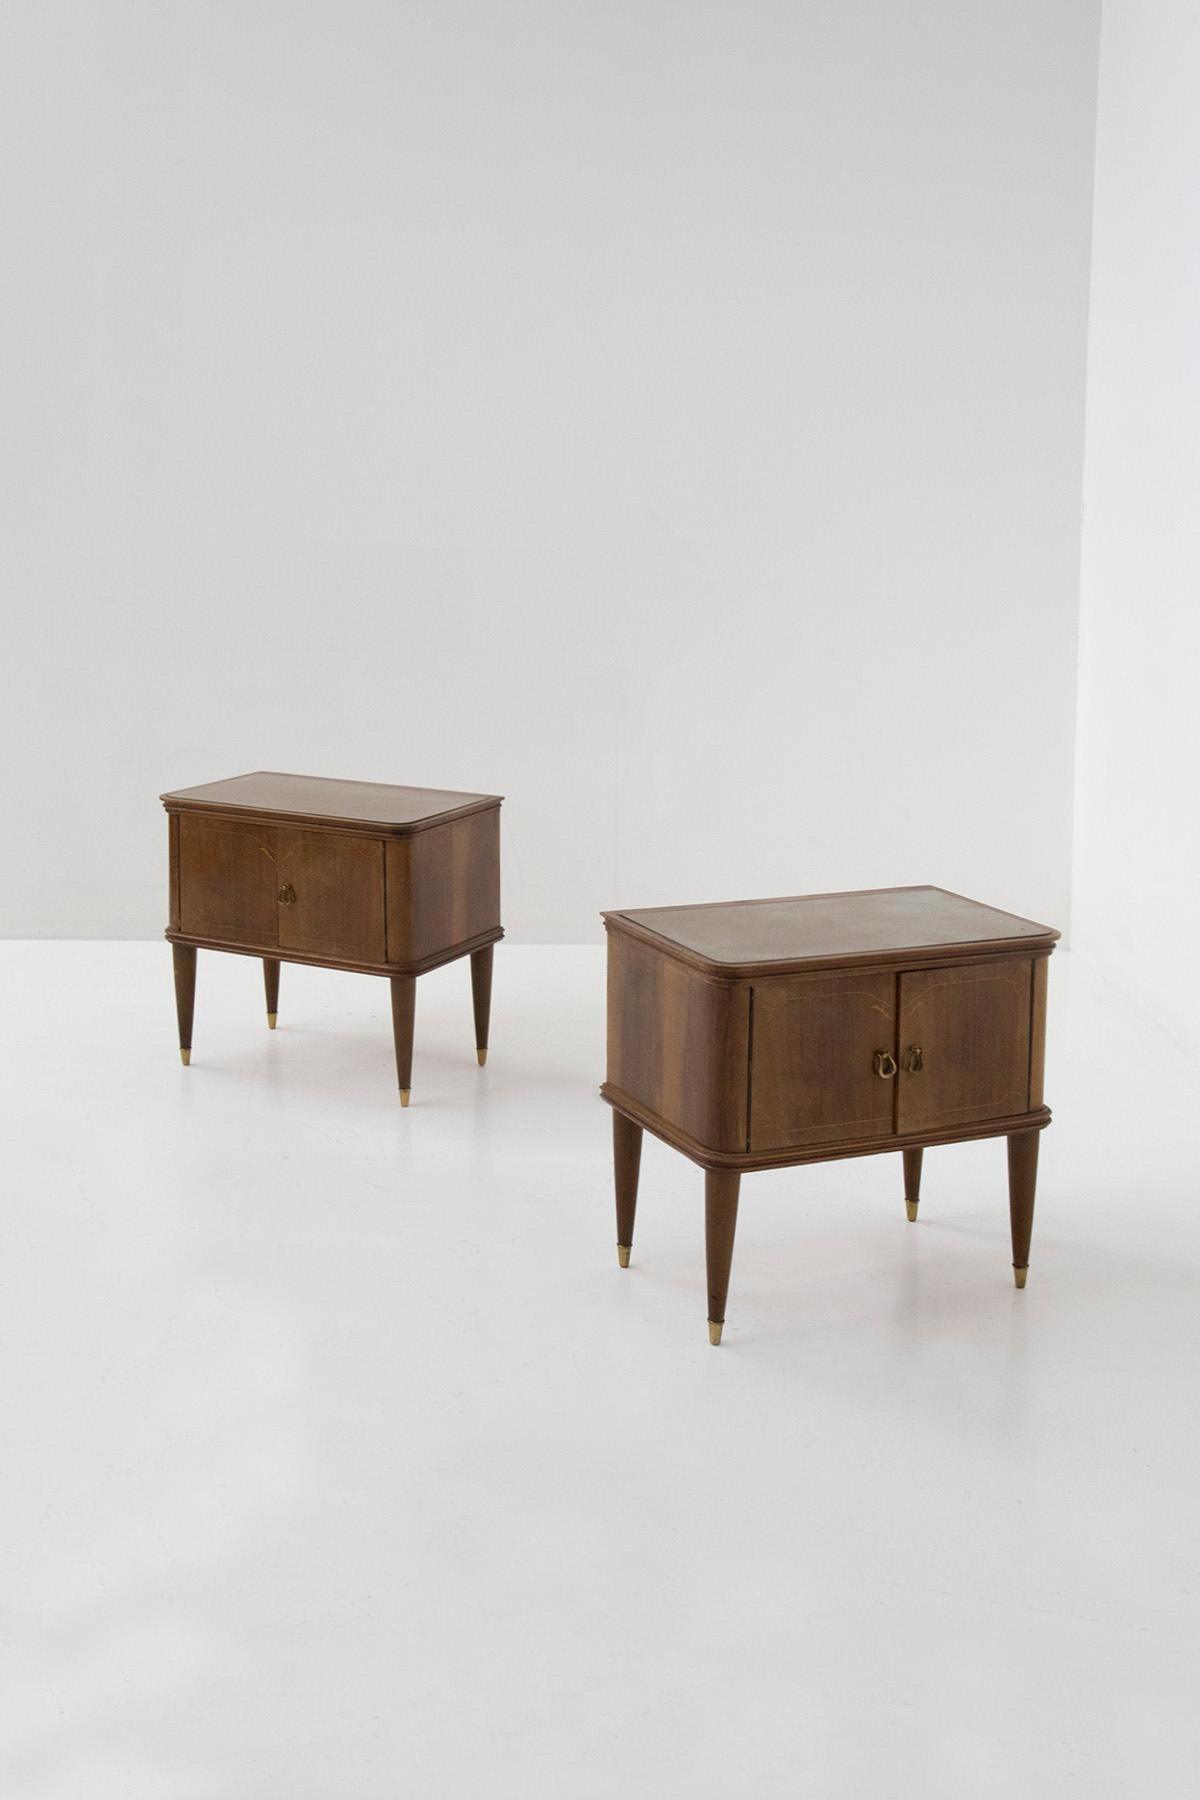 Zwei Nachttische aus den 1950er Jahren, die Paolo Buffa zugeschrieben werden. Das Paar zeichnet sich durch einen eleganten und schlichten Holzrahmen mit kleinen Mustern auf dem Holz als dekoratives Element aus. Die Nachttische öffnen sich über zwei